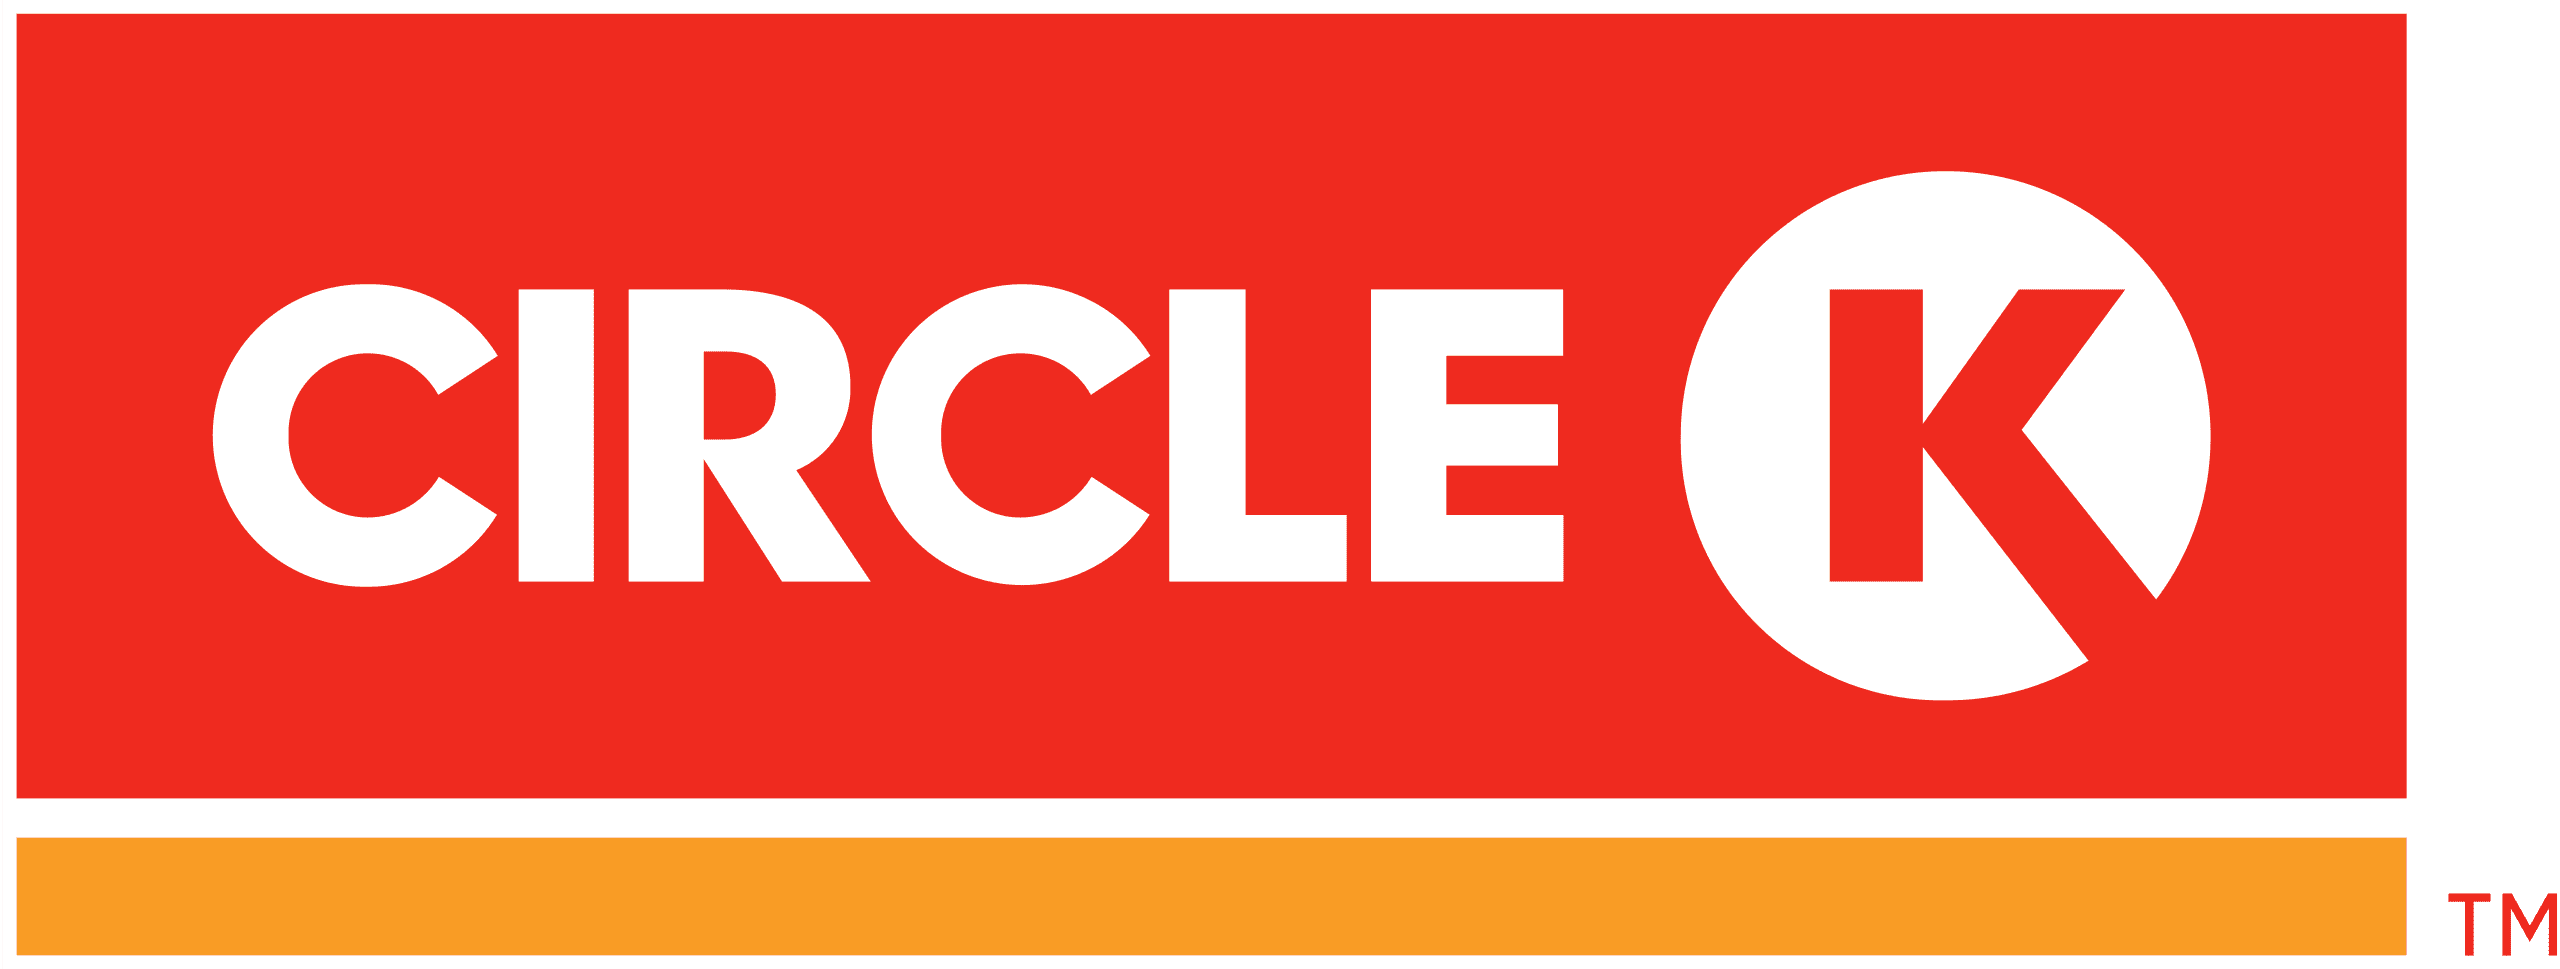 Circle K logo